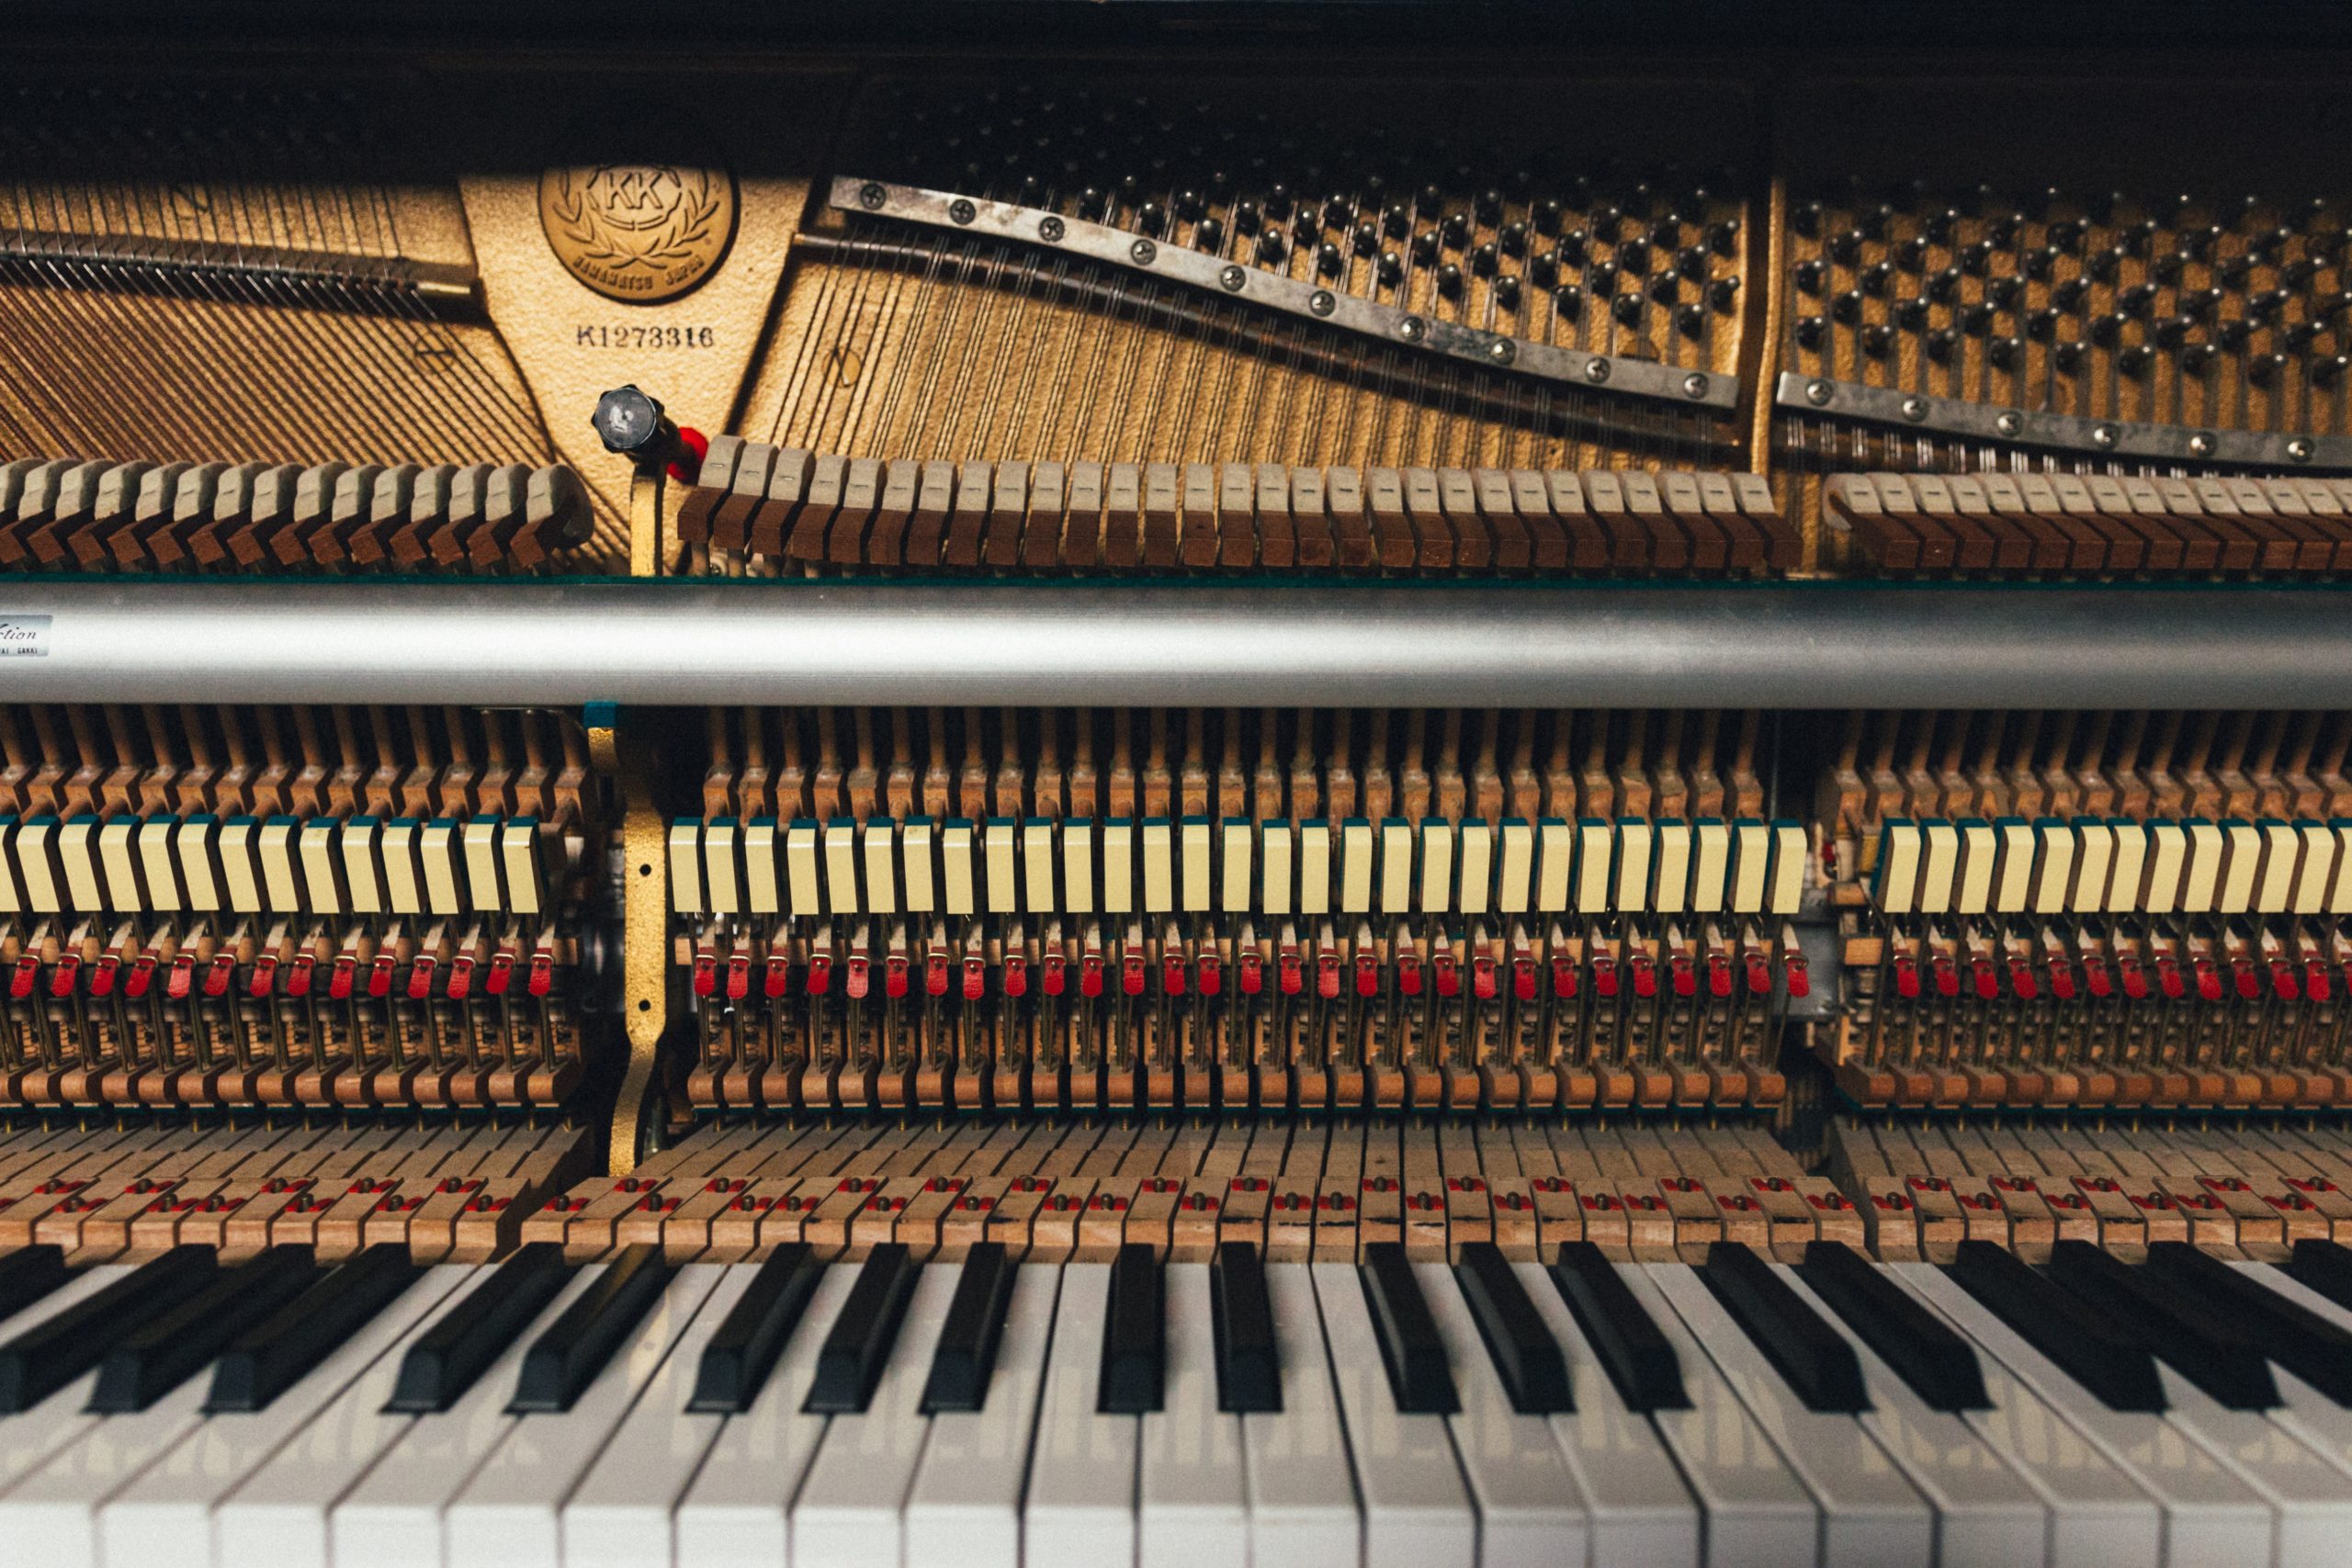 ¡Ojo! Antes de comprar tu primer piano, toma en cuenta los siguientes tips.